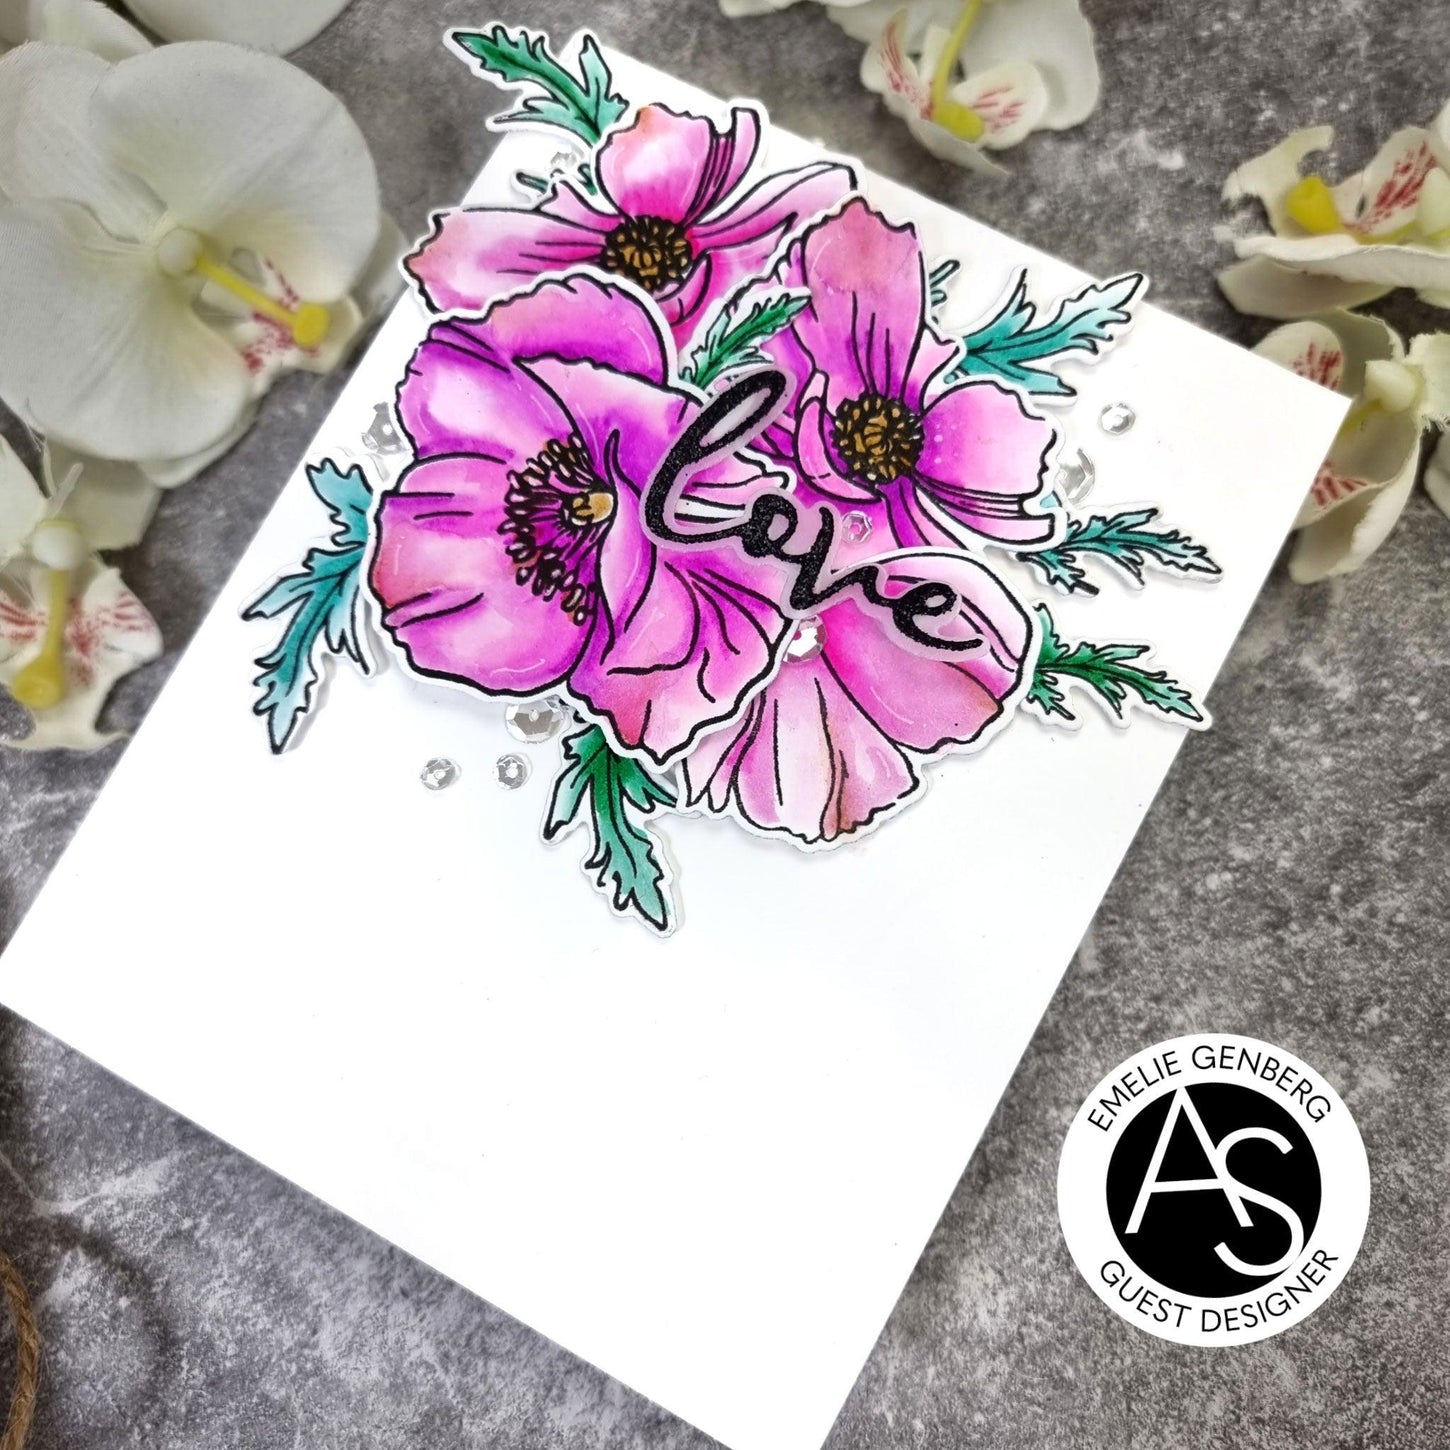 Alex-syberia-designs-poppies-flowers-stamp-dies-love-valentines-friend-cardmaking-handmadecards-scrapbook-shop-tutorial-cardmakers-coloring-die-cover